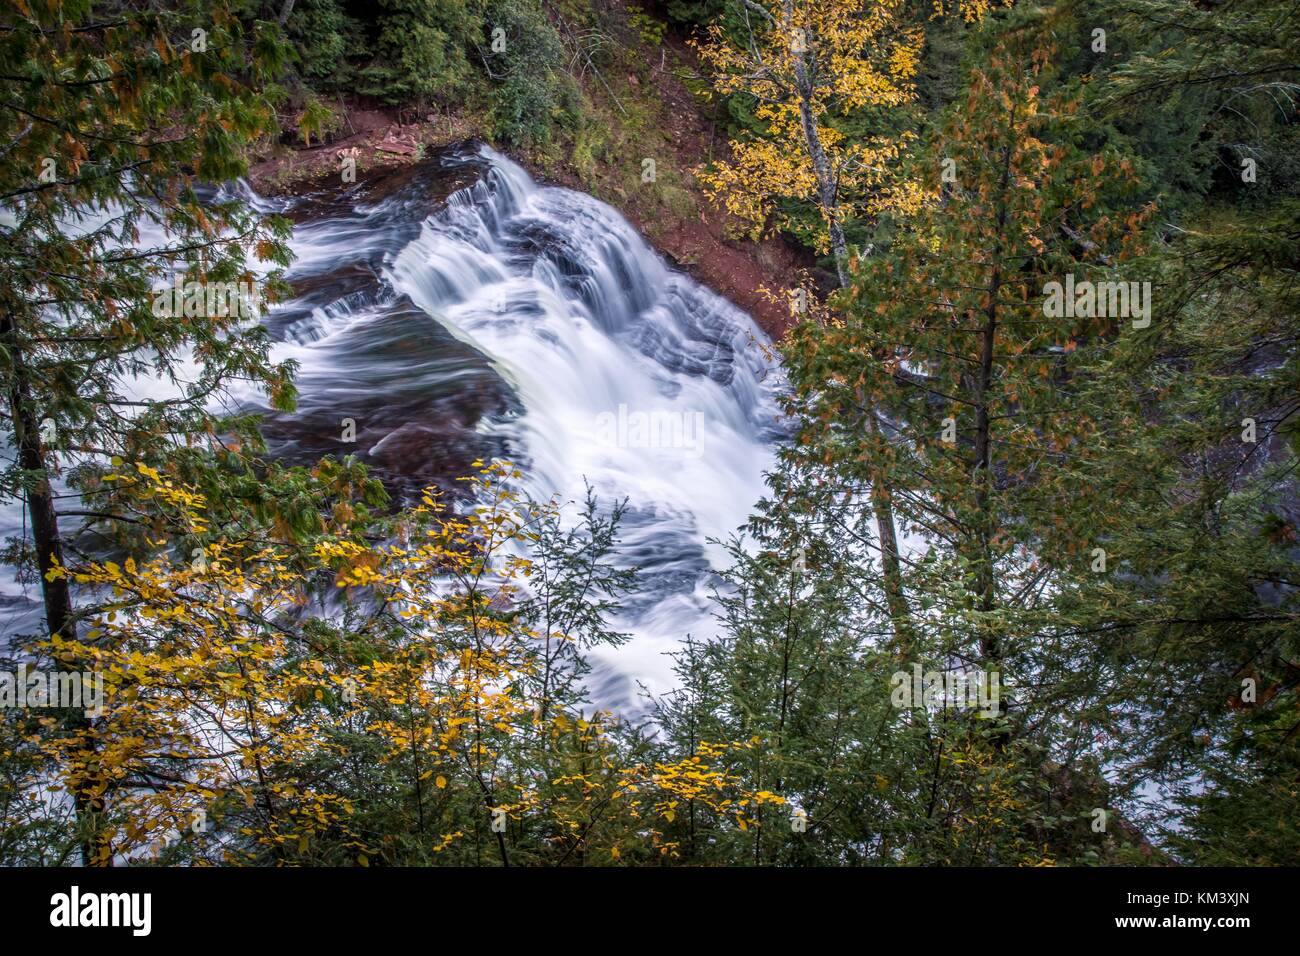 Wasserfall im Wald. Schöne Achat fällt Scenic Seite in der Oberen Halbinsel von Michigan. Die obere Halbinsel ist bekannt für seine fallen Farben bekannt. Stockfoto